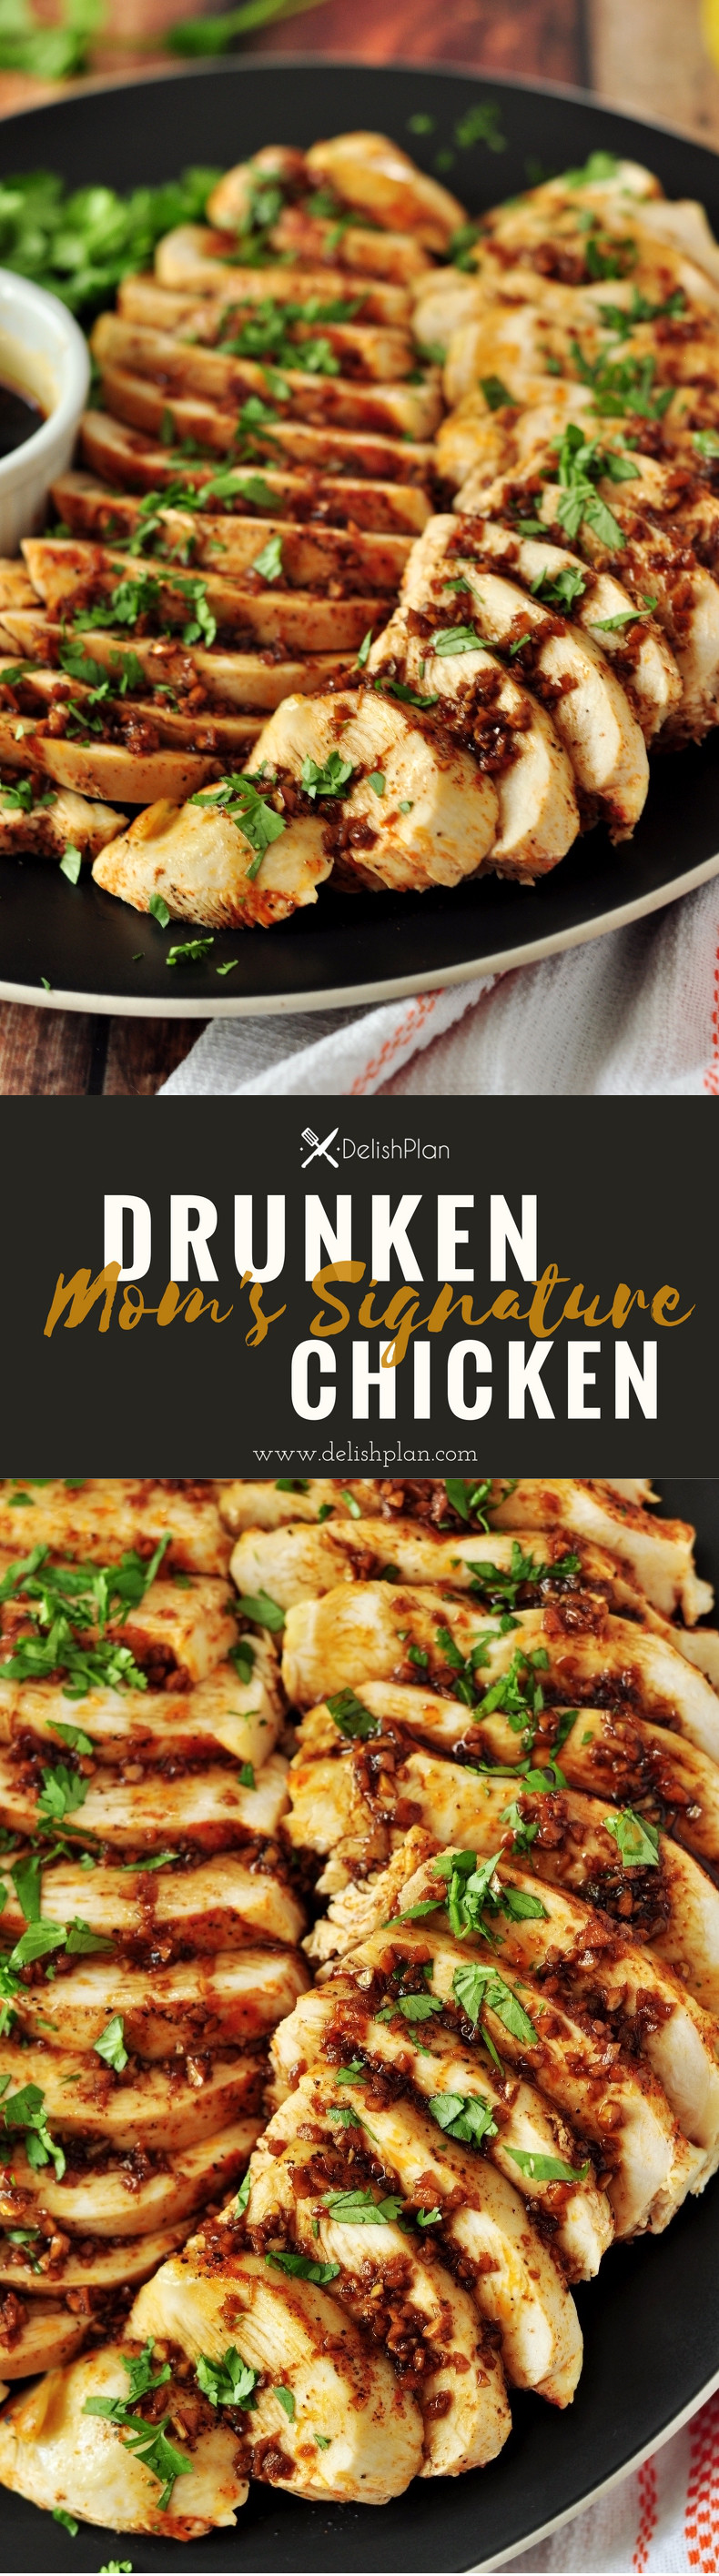 moms-signature-drunken-chicken